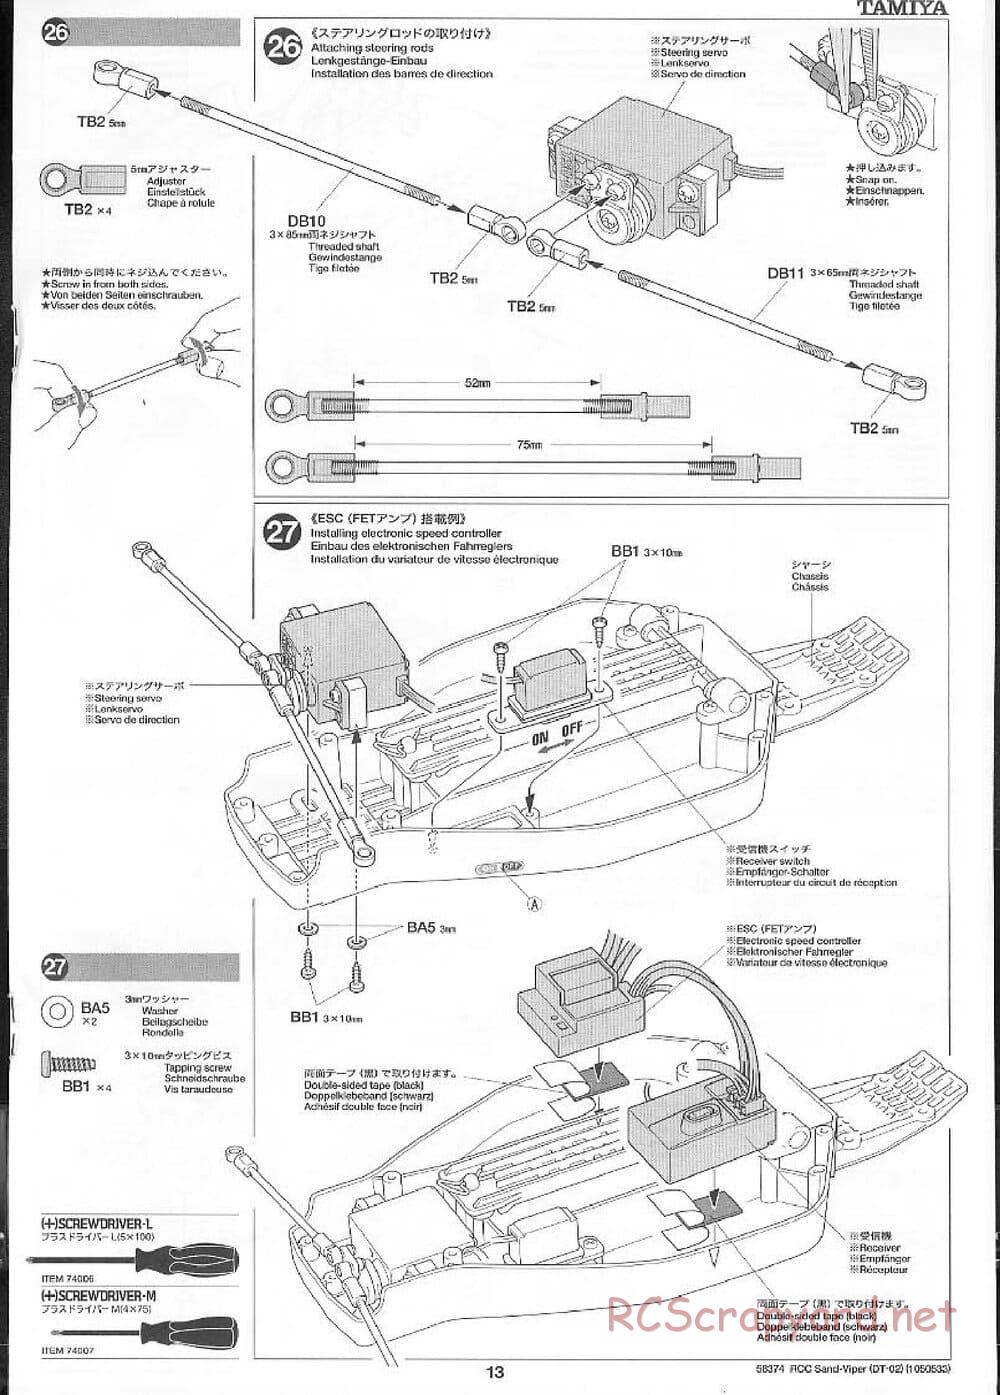 Tamiya - Sand Viper Chassis - Manual - Page 13